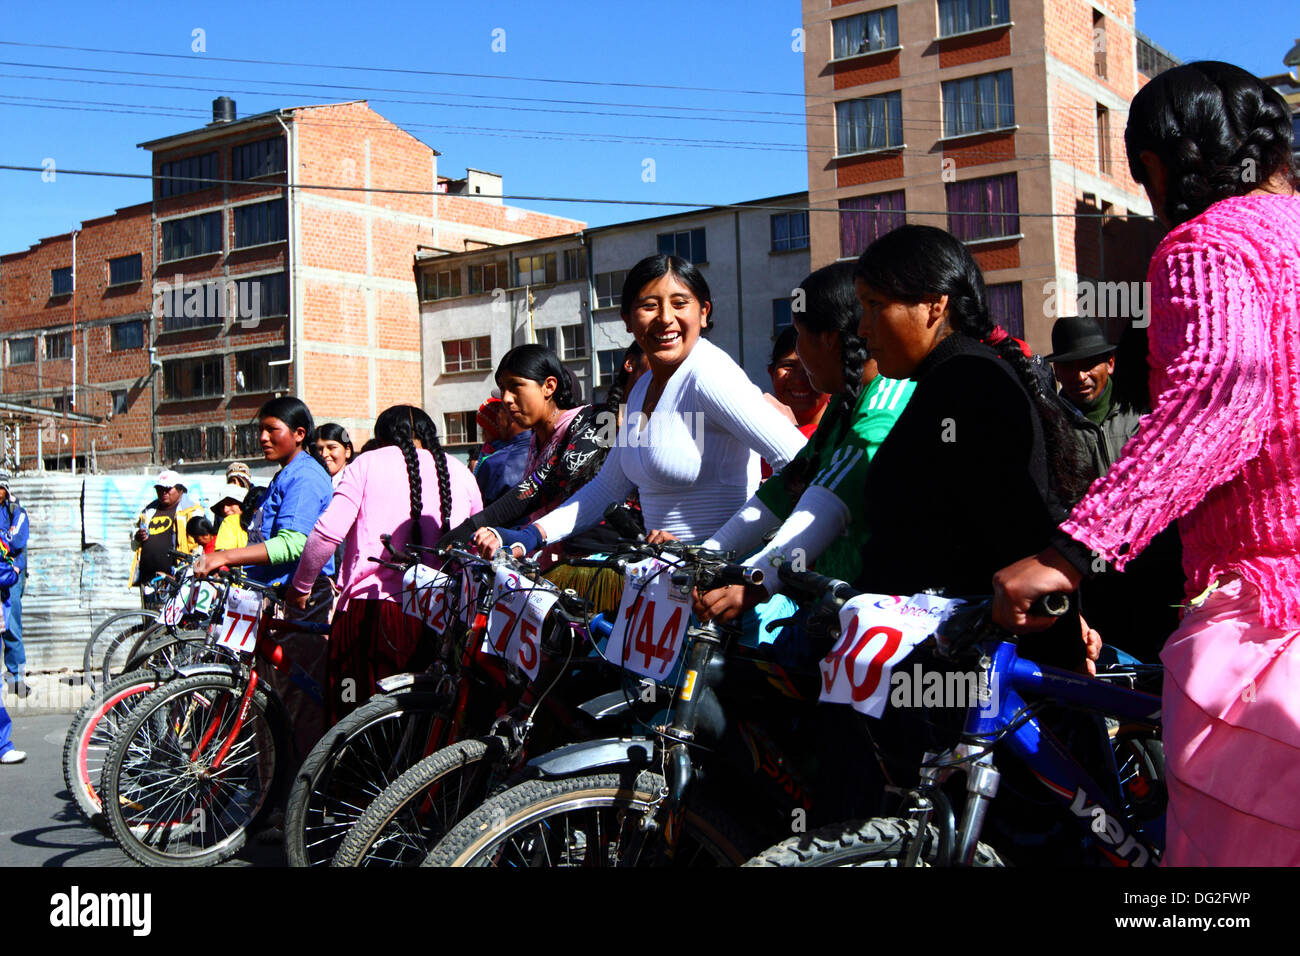 El alto, Bolivia. 12 ottobre 2013. Le concorrenti si schierano prima dell'inizio di una corsa ciclistica Cholitas per donne indigene Aymara. La gara si svolge ad un'altitudine di poco più di 4.000 m lungo le strade principali della città di El alto (sopra la Paz) per il Womens Day boliviano, che si è svolto ieri venerdì 11 ottobre. Crediti: James Brunker / Alamy Live News Foto Stock